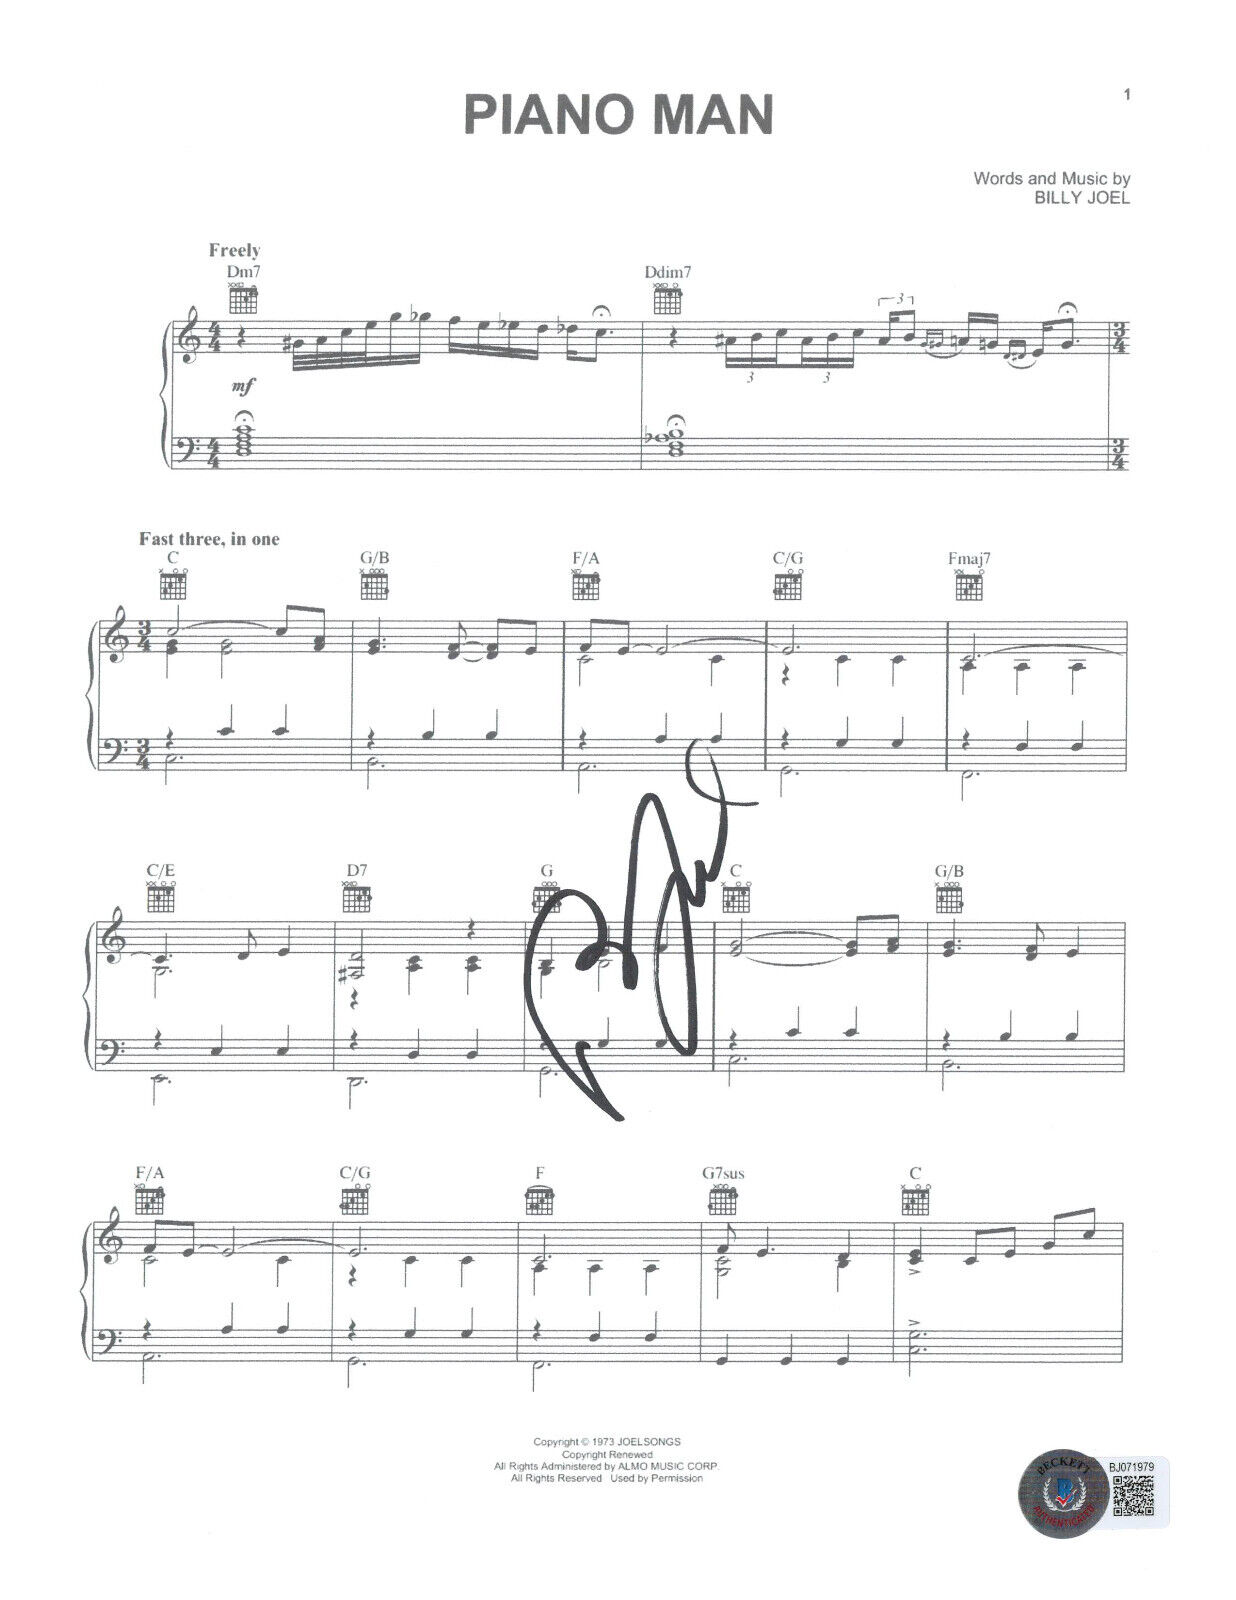 BILLY JOEL SIGNED AUTOGRAPH PIANO MAN MUSIC SHEET BECKETT BAS